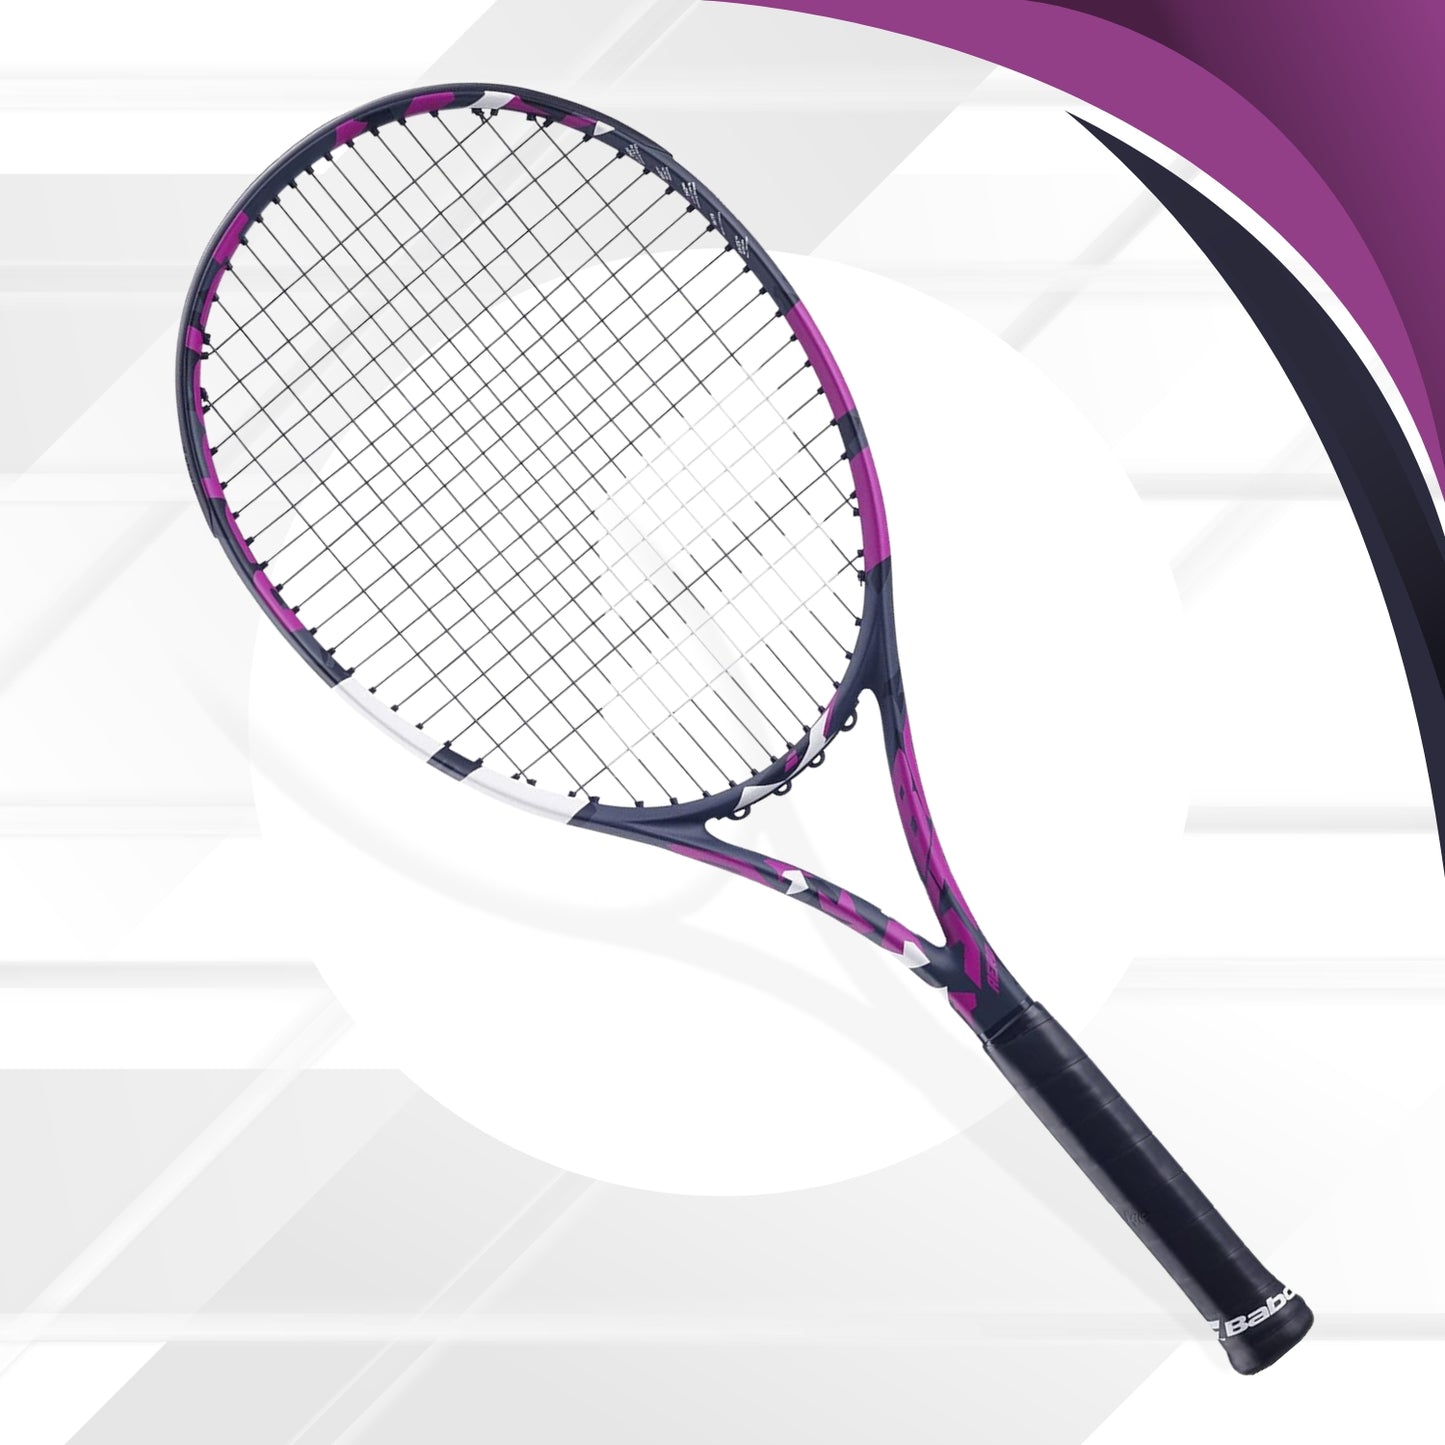 Babolat Boost Aero S CV Strung Tennis Racquet - Best Price online Prokicksports.com